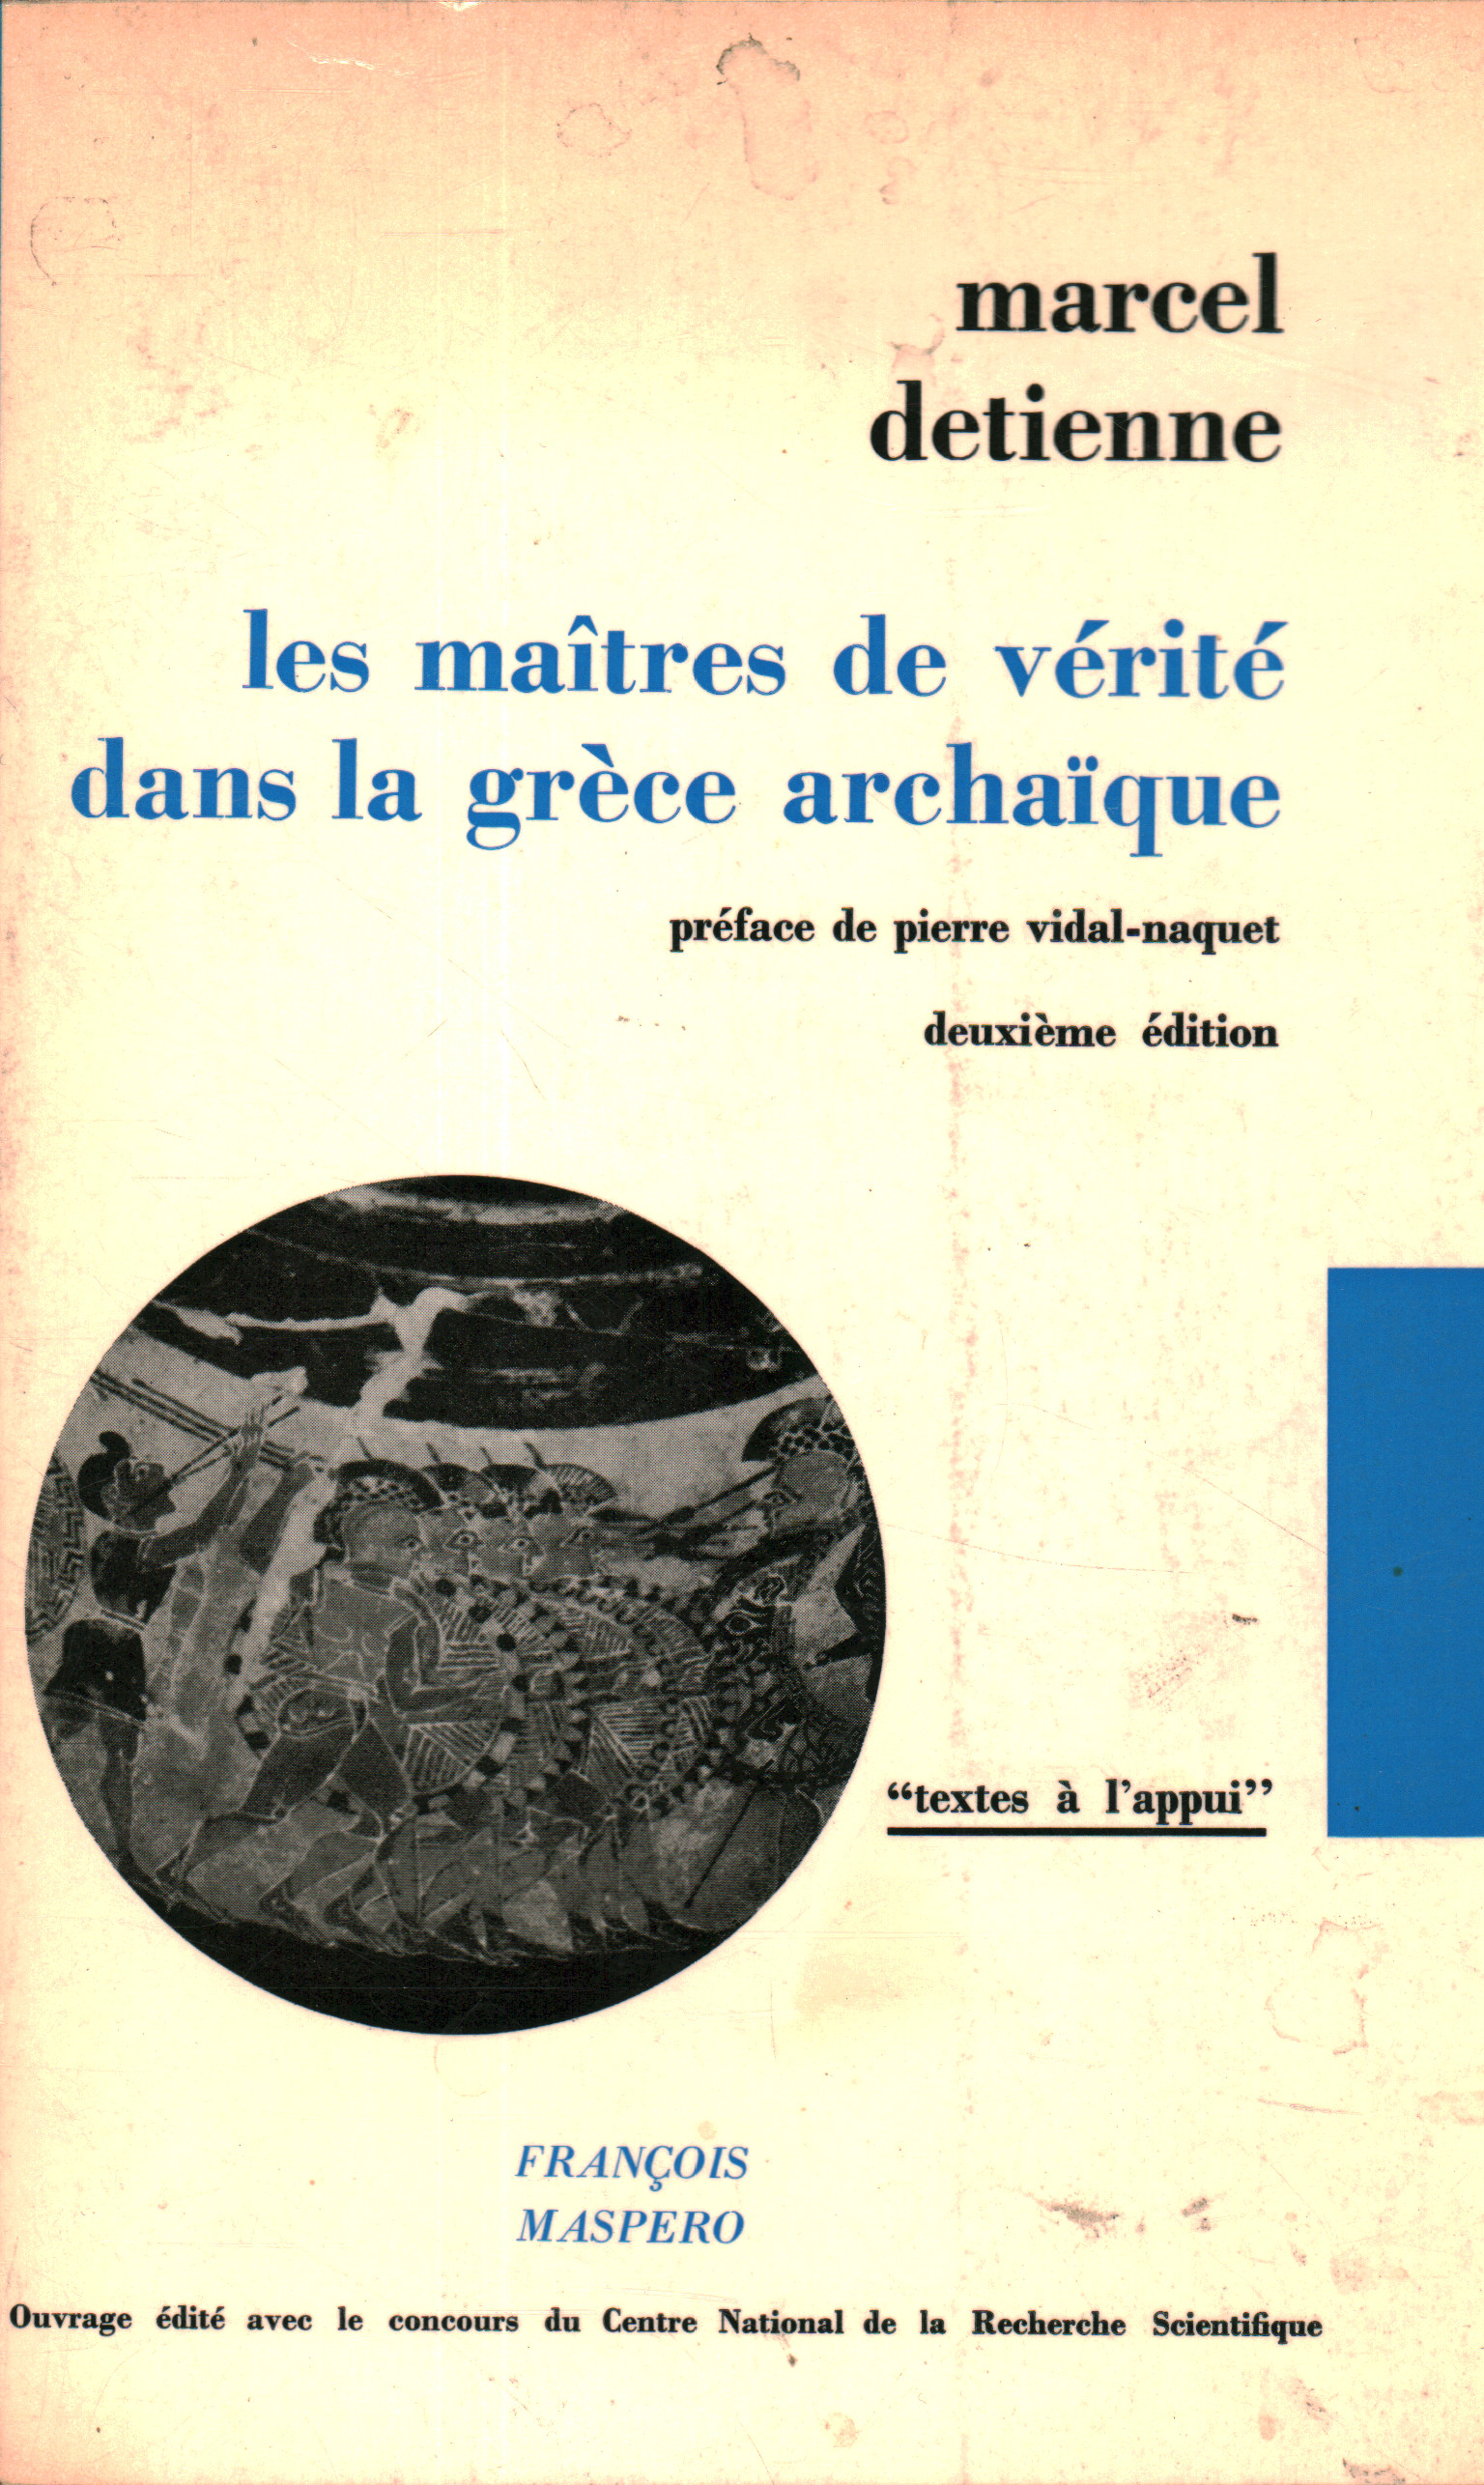 Les maitres de vèritè dans la grèce archaique, Marcel Detienne